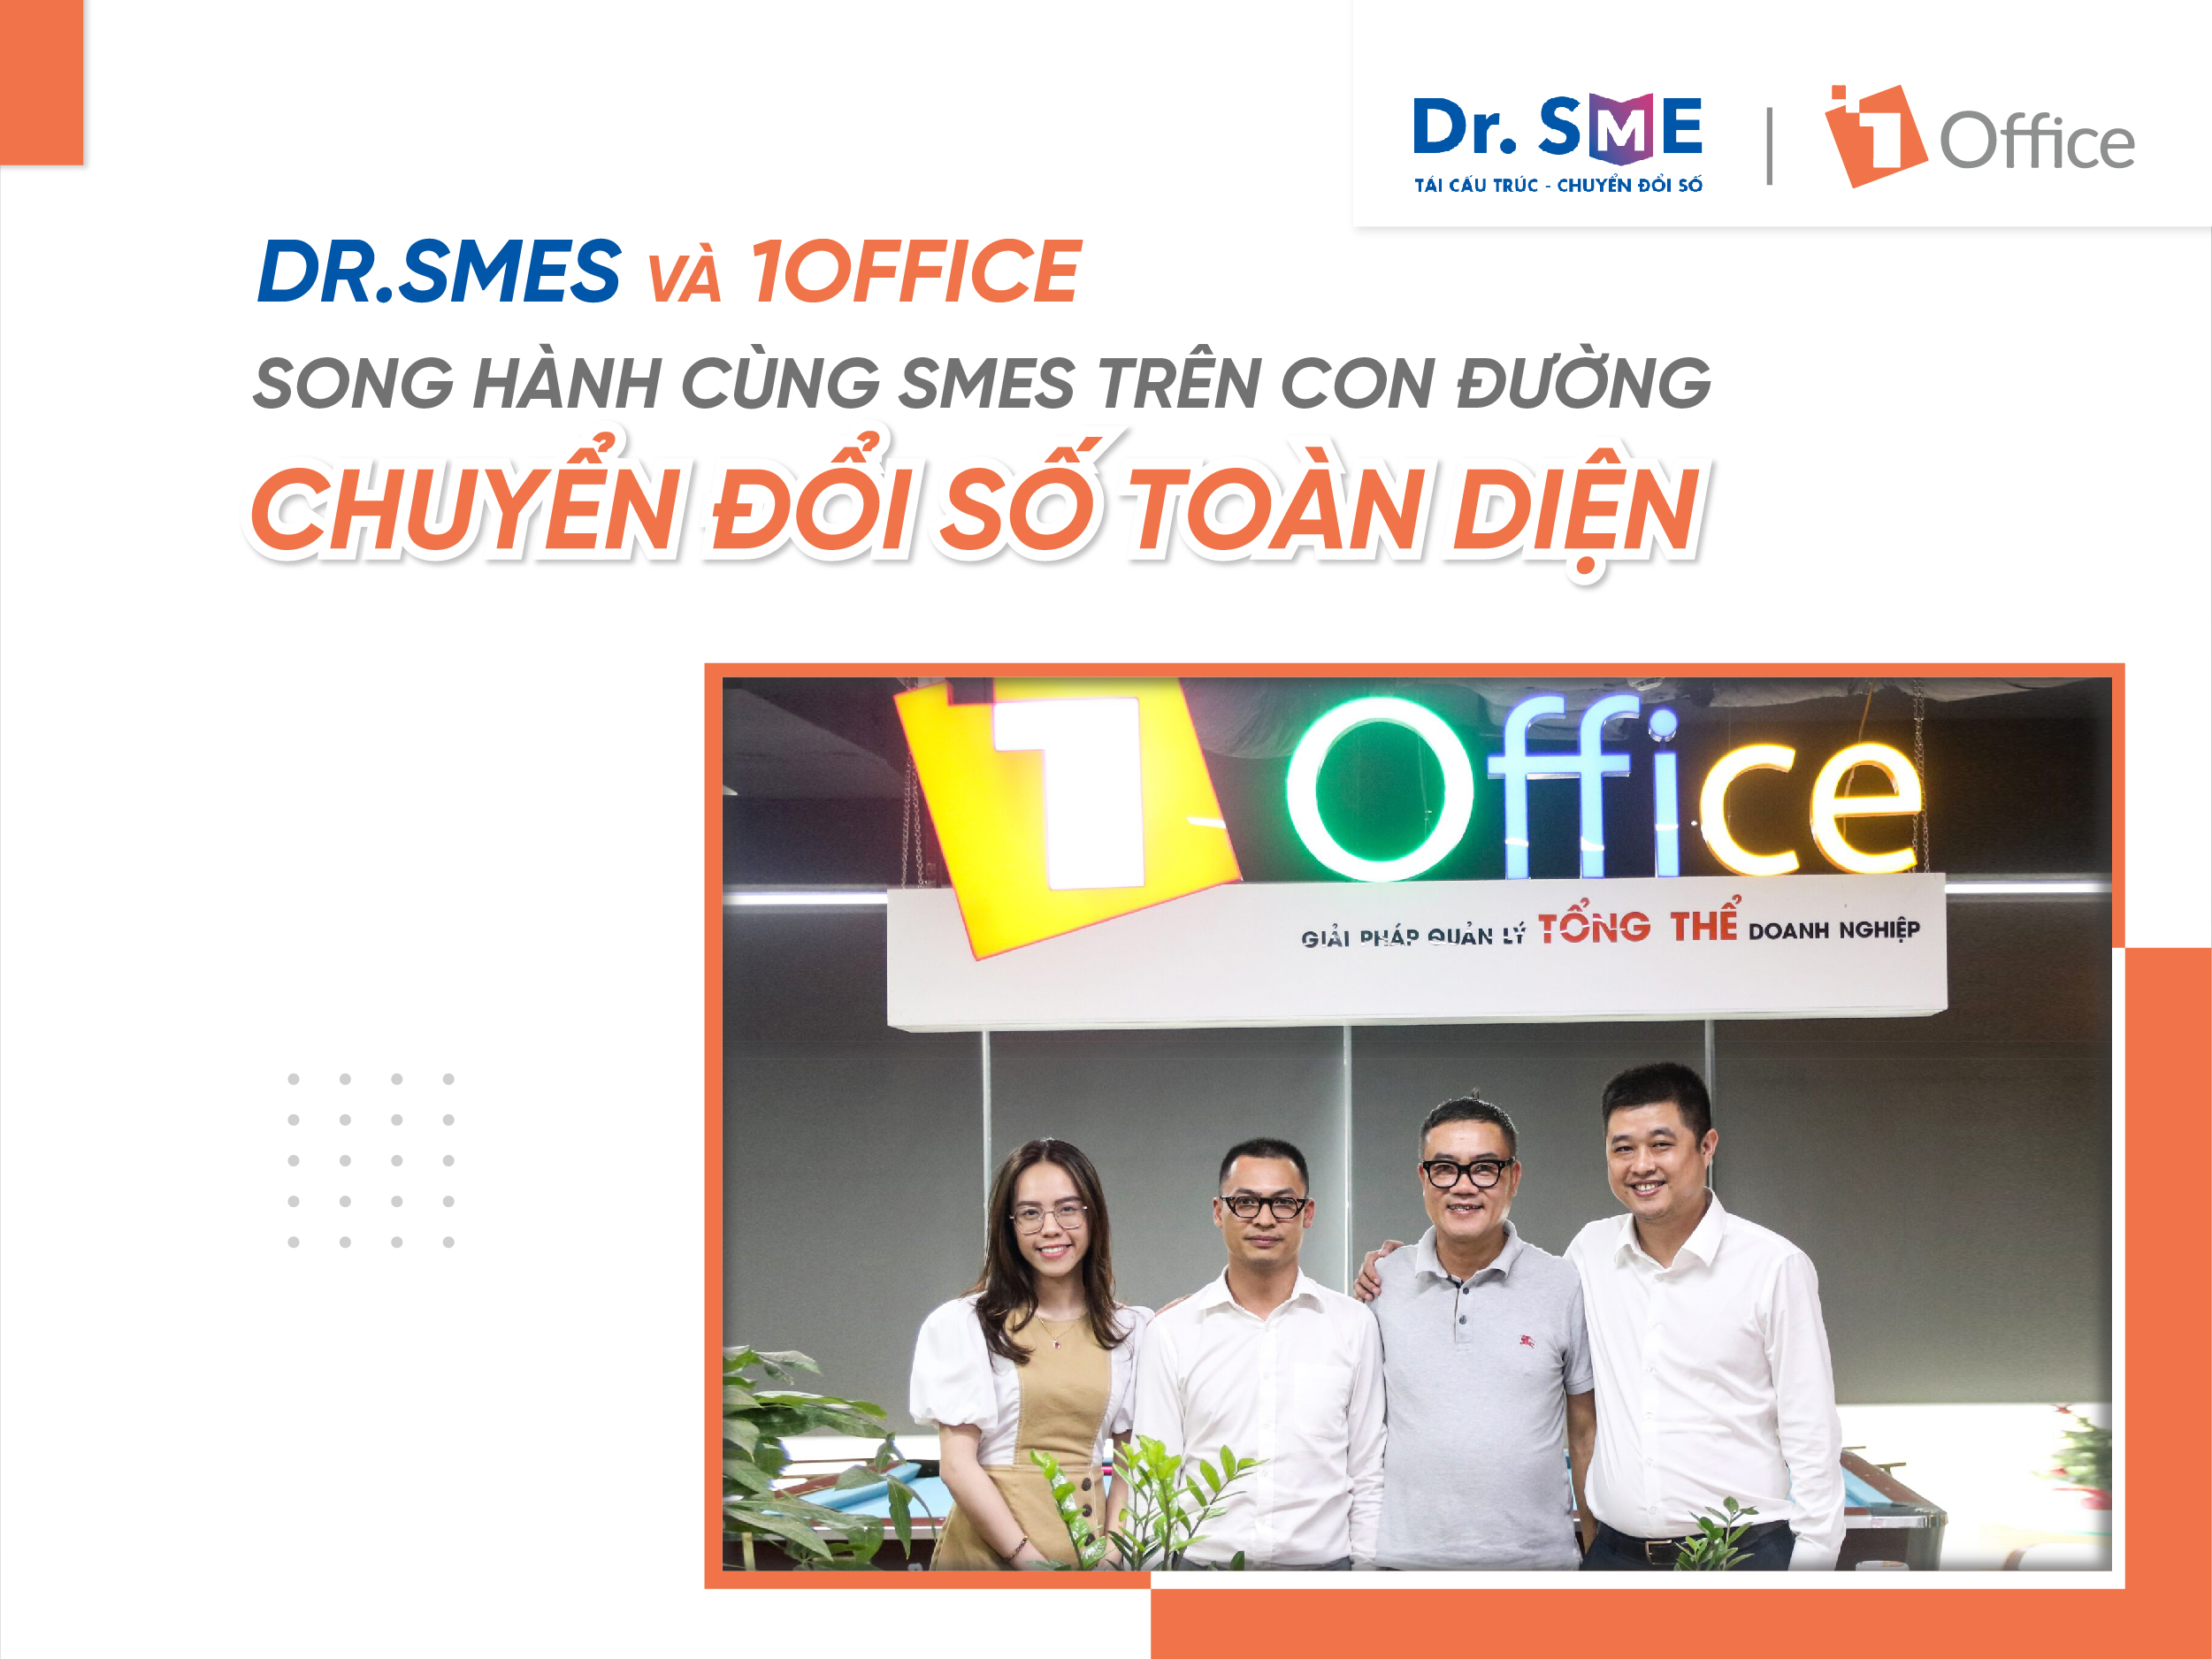 Dr.SMEs và 1Office song hành cùng SMEs trên con đường chuyển đổi số toàn diện